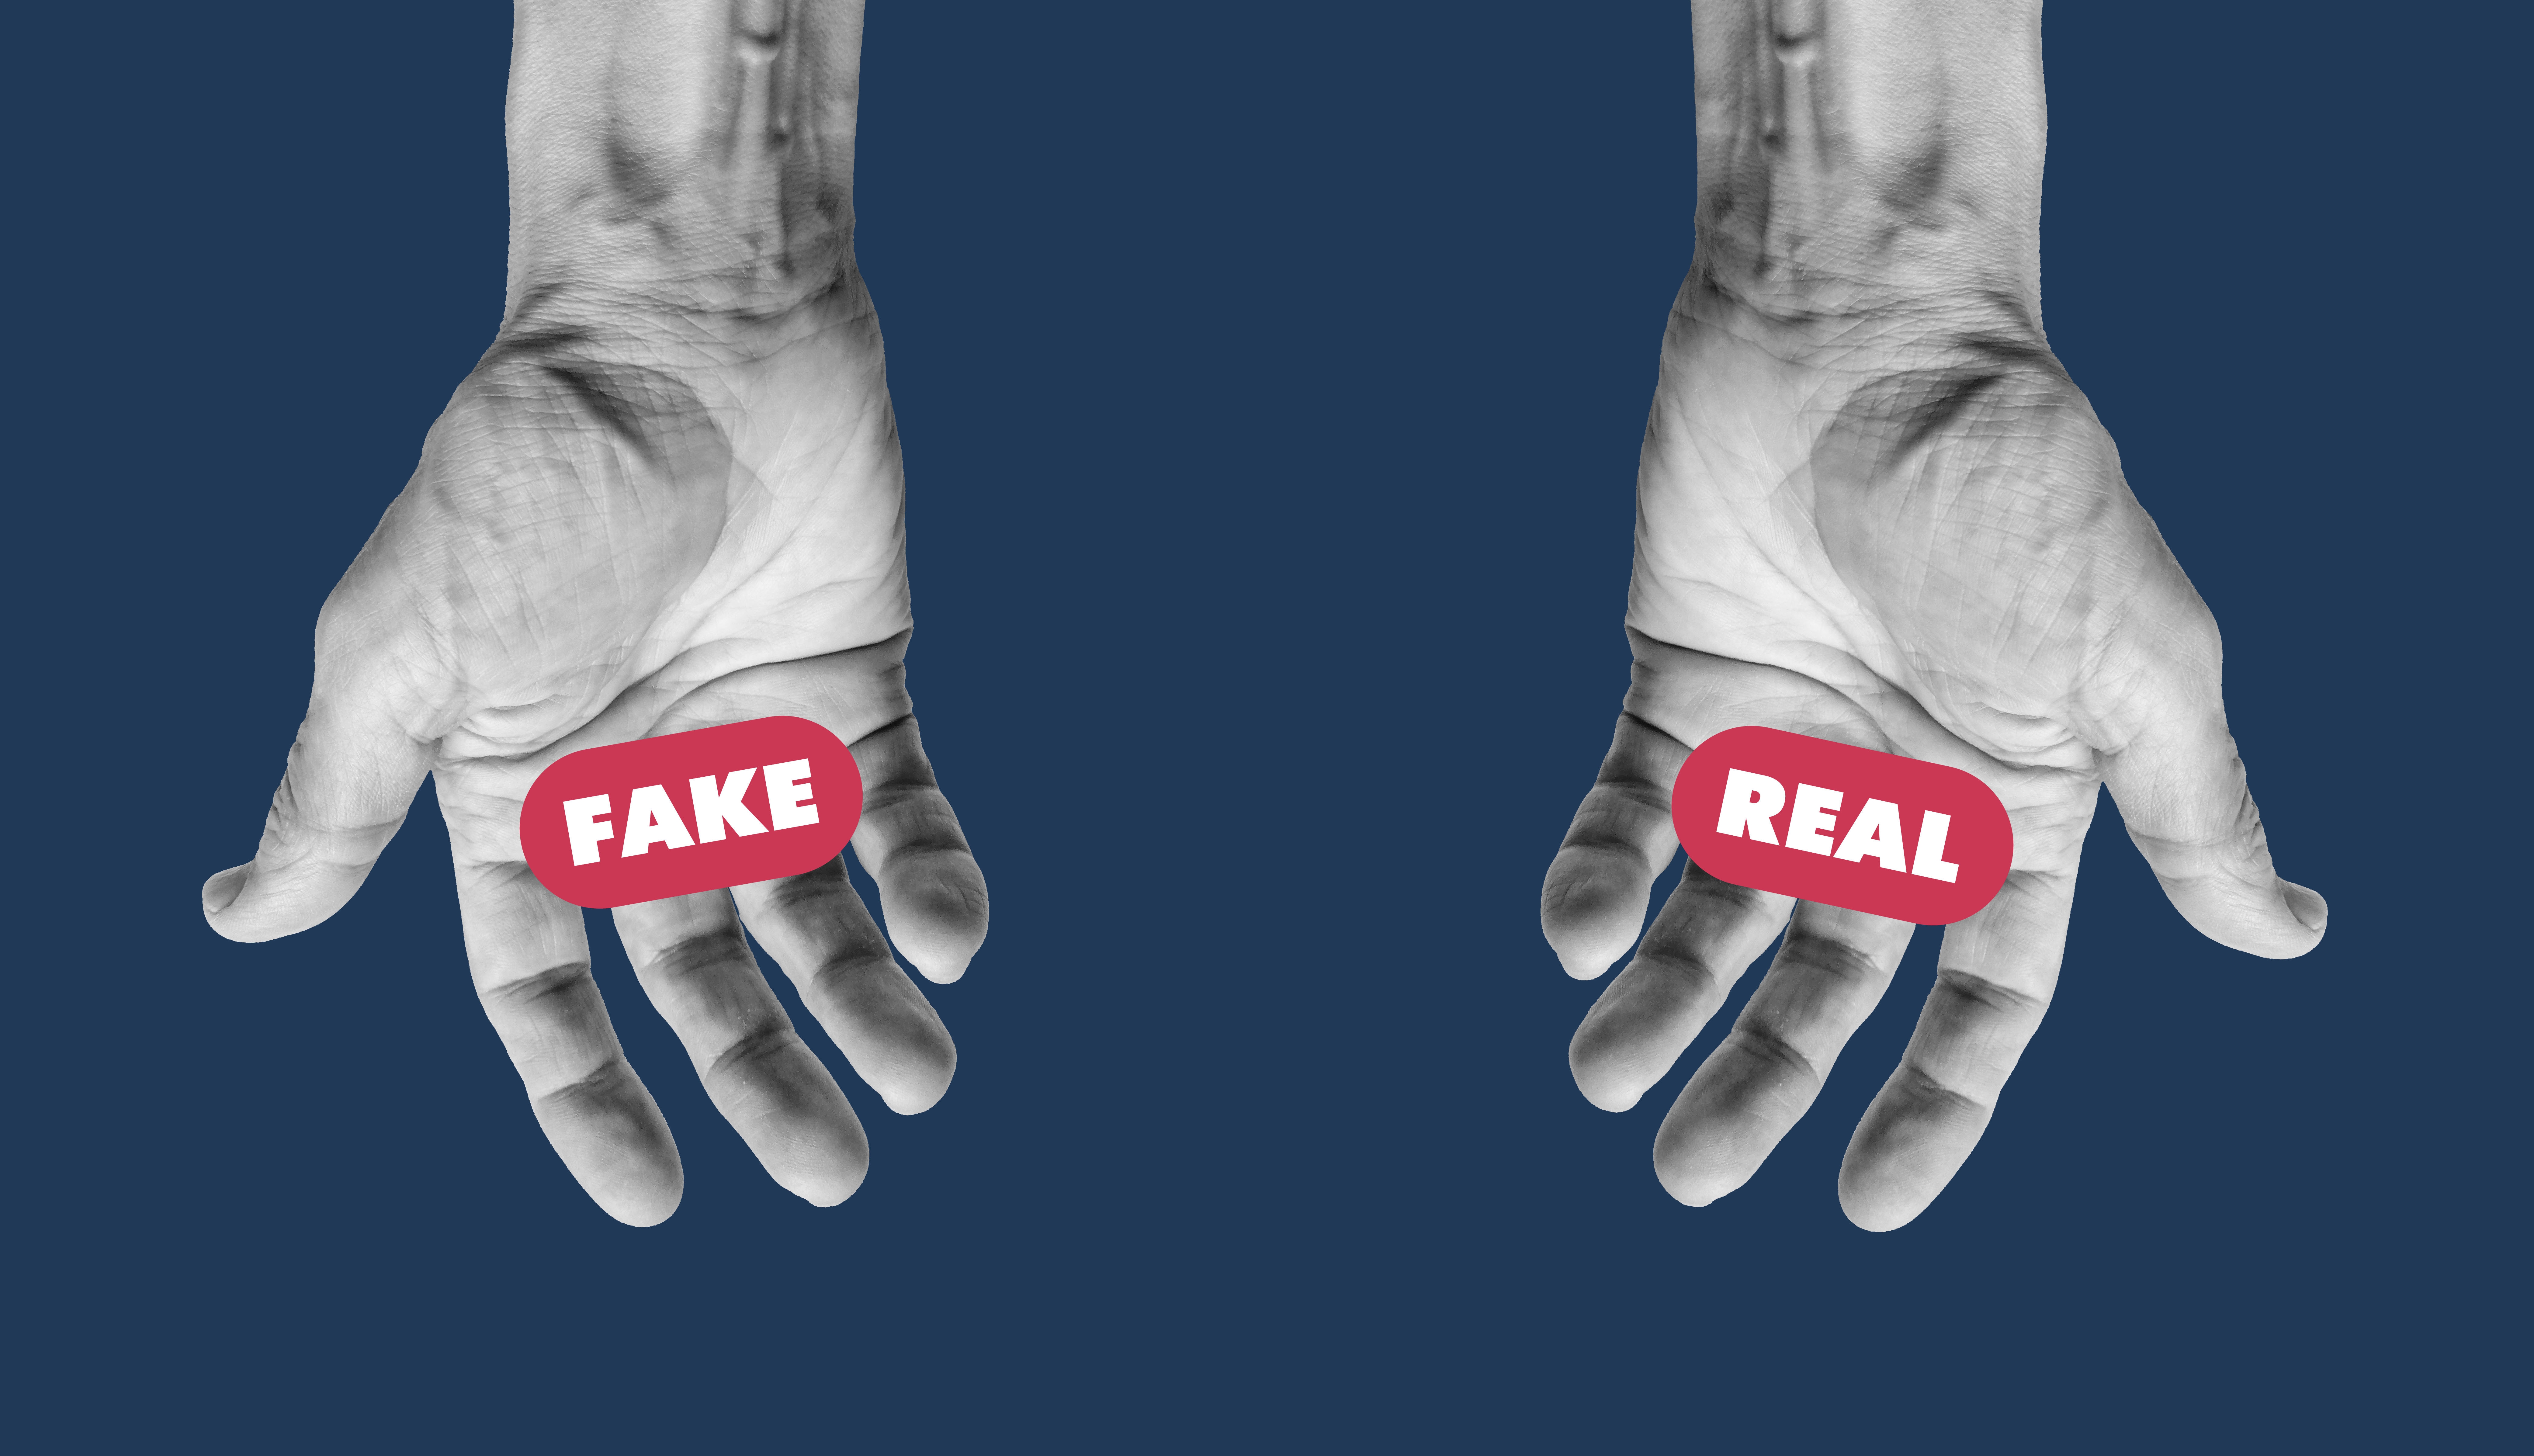  Dos manos humanas sosteniendo las palabras en inglés falso y real, sobre un fondo azul.